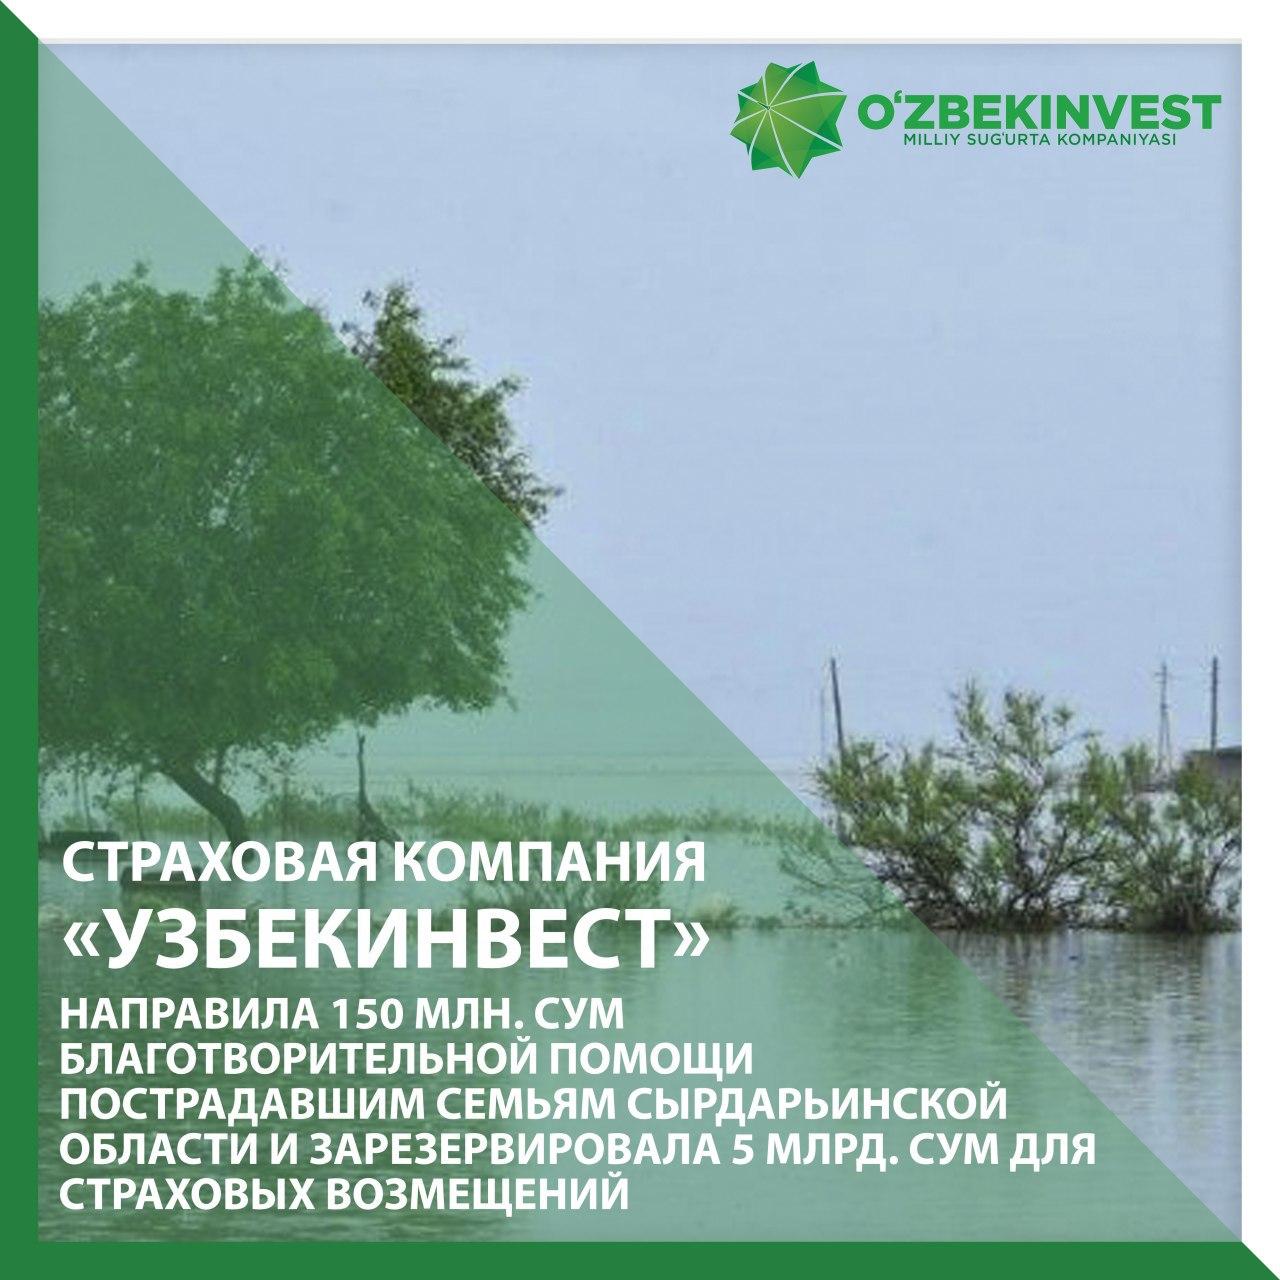 Страховая компания «Узбекинвест» направила 150 млн. сумов пострадавшим семьям Сырдарьинской области и начала выплачивать страховые возмещения